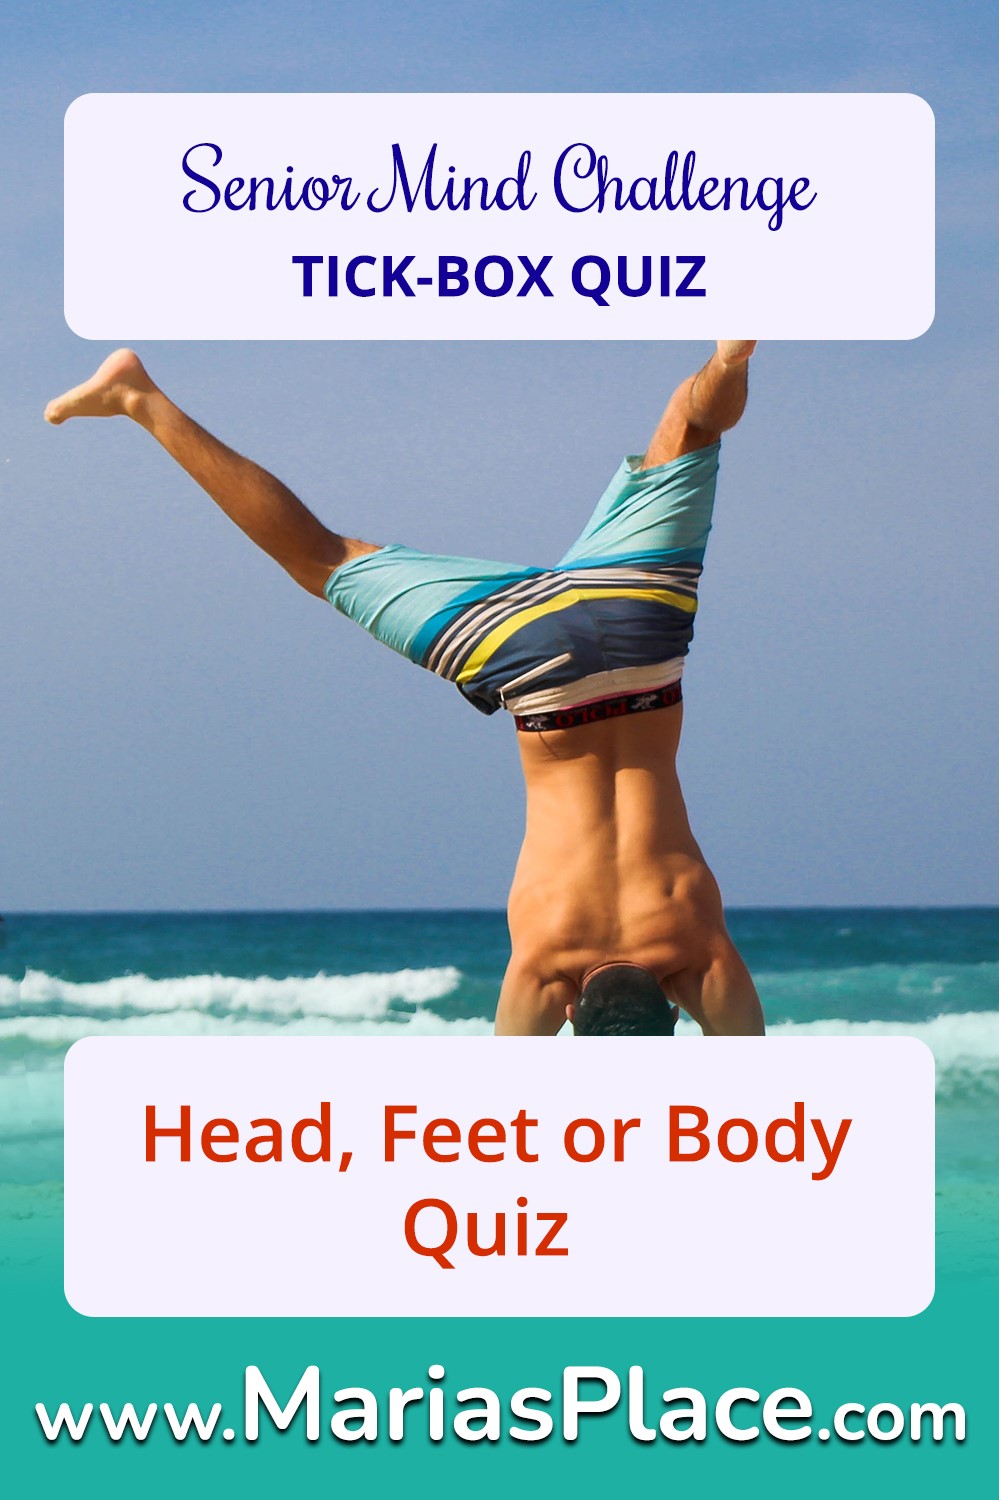 Head, Feet or Body Quiz